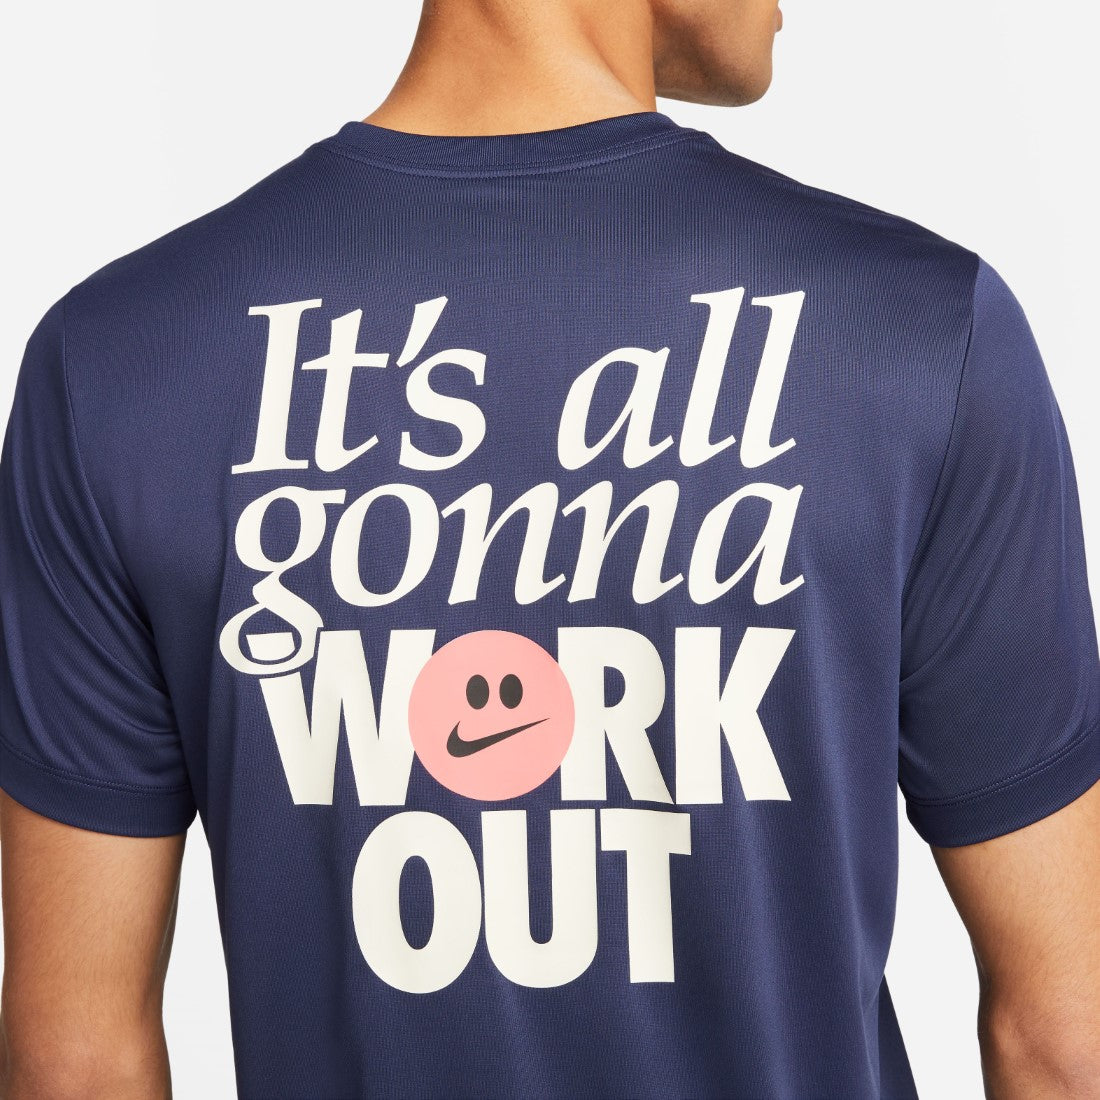 Dri-FIT Fitness T-Shirt